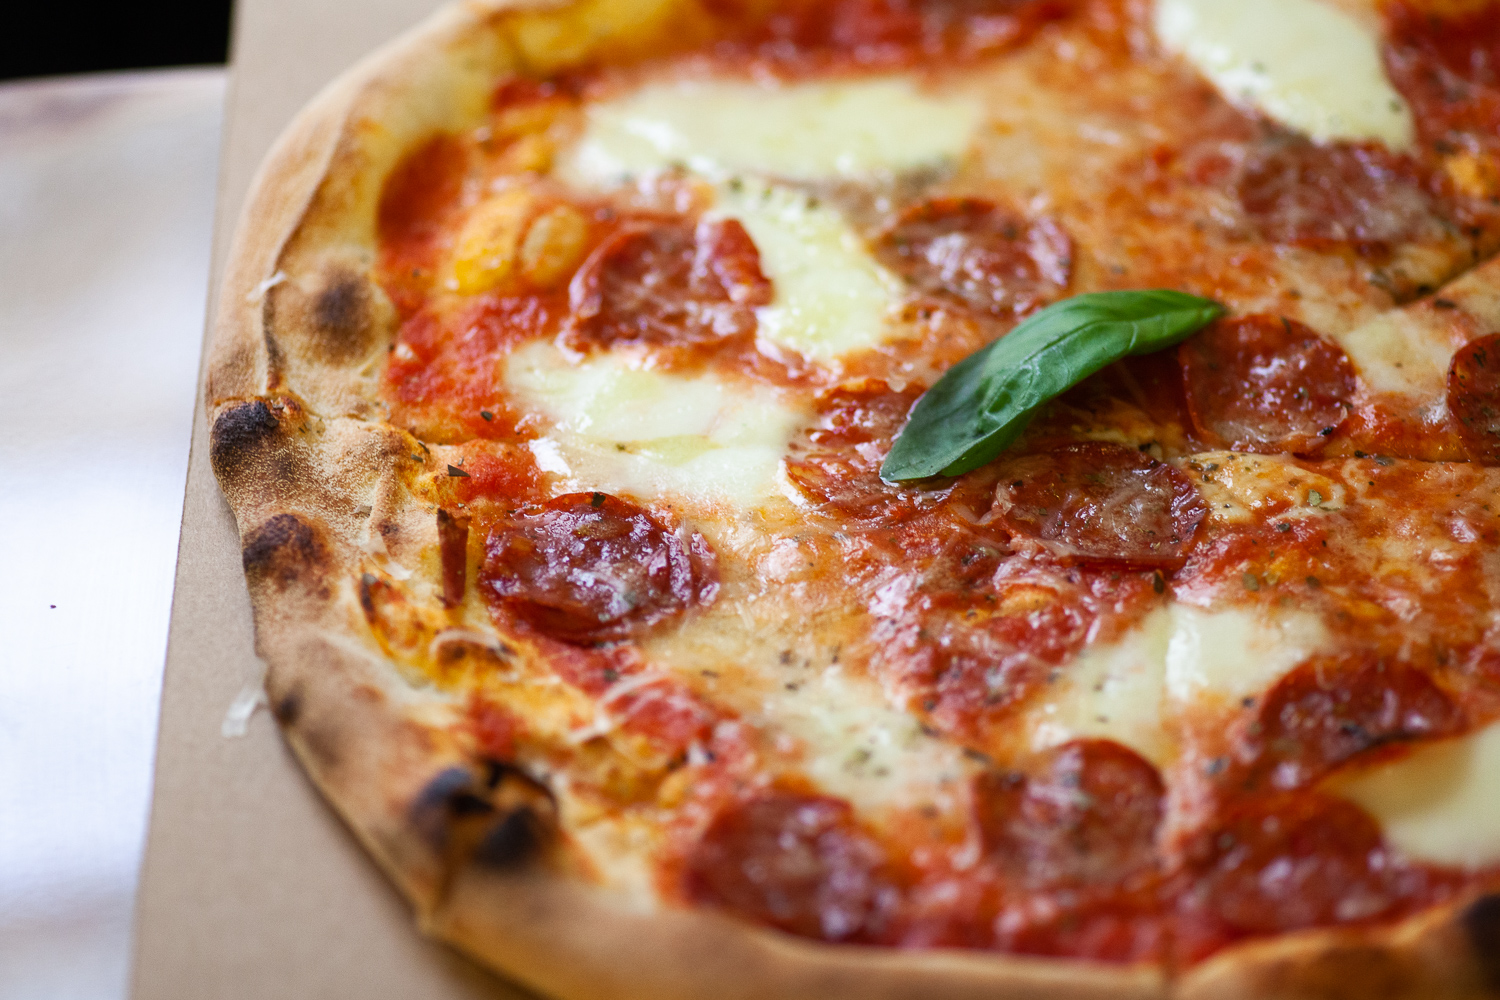 A Csarnoknegyedben nyit új egységet a Pizza Manufaktúra